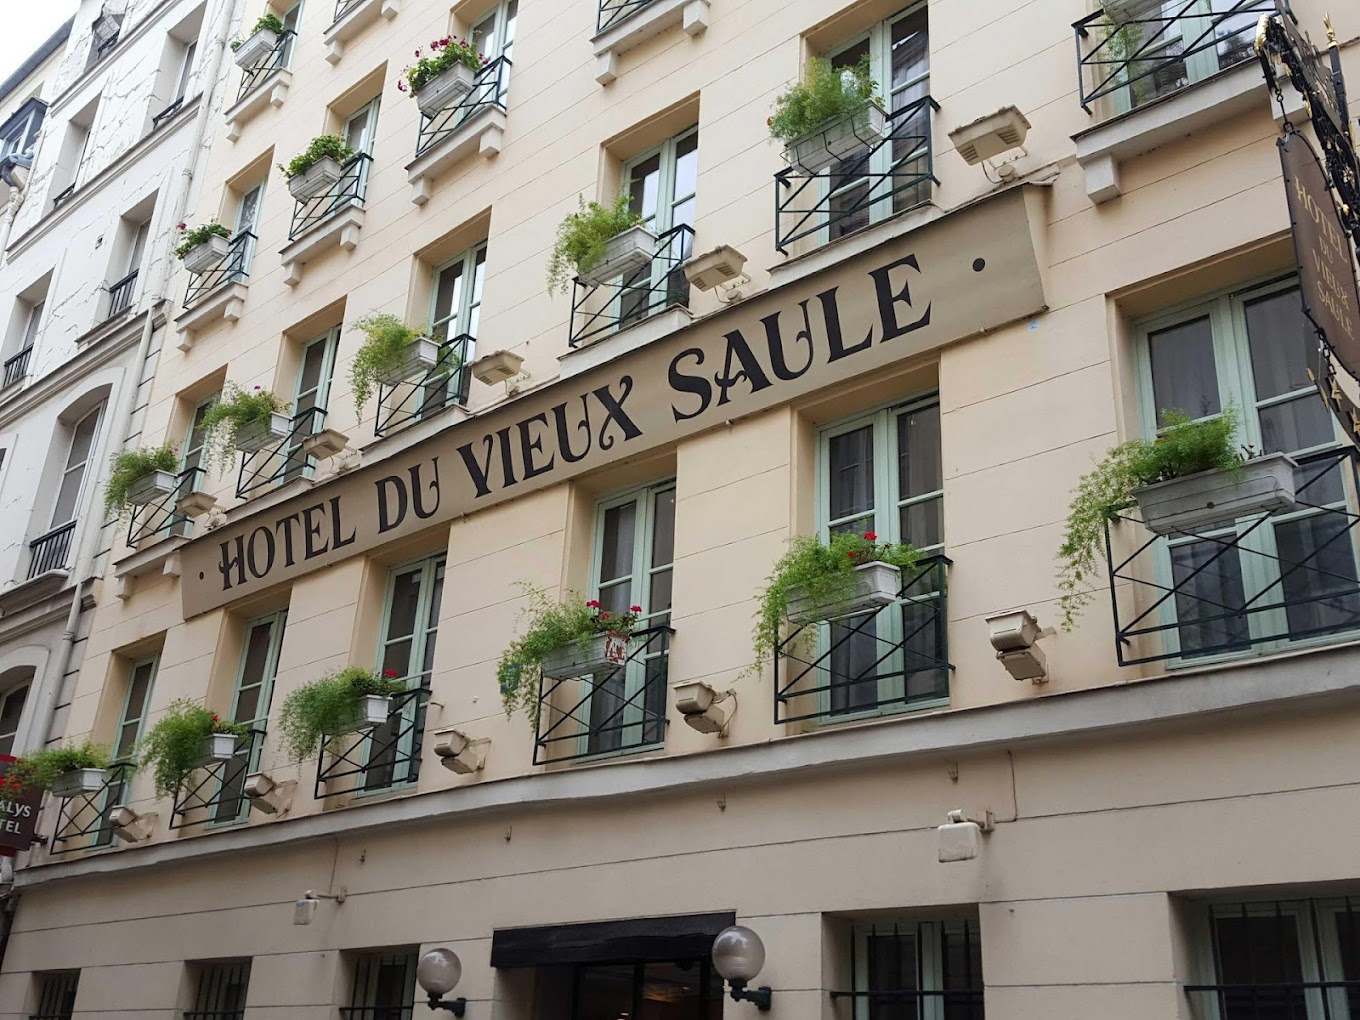 Ξενοδοχείο du Vieux Saule